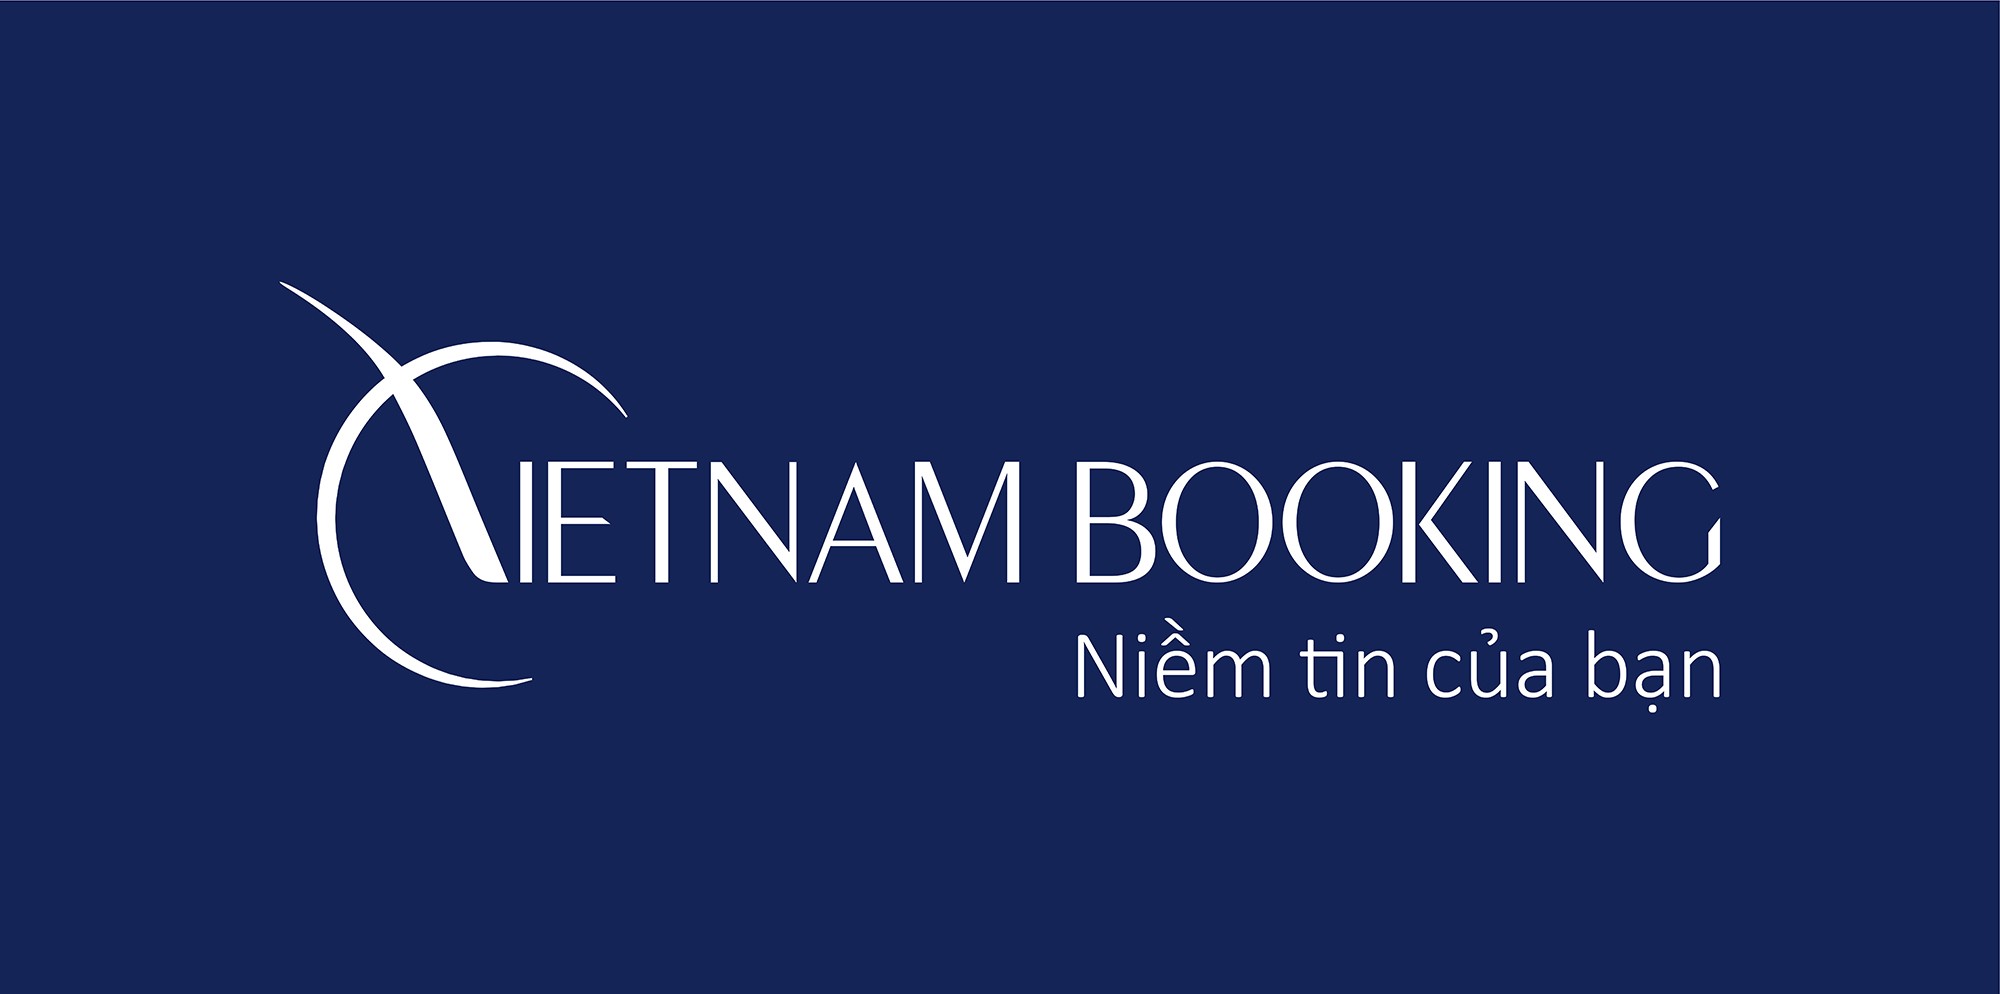 cách bán phòng khách sạn online hiệu quả-dịch vụ Việt Nam booking